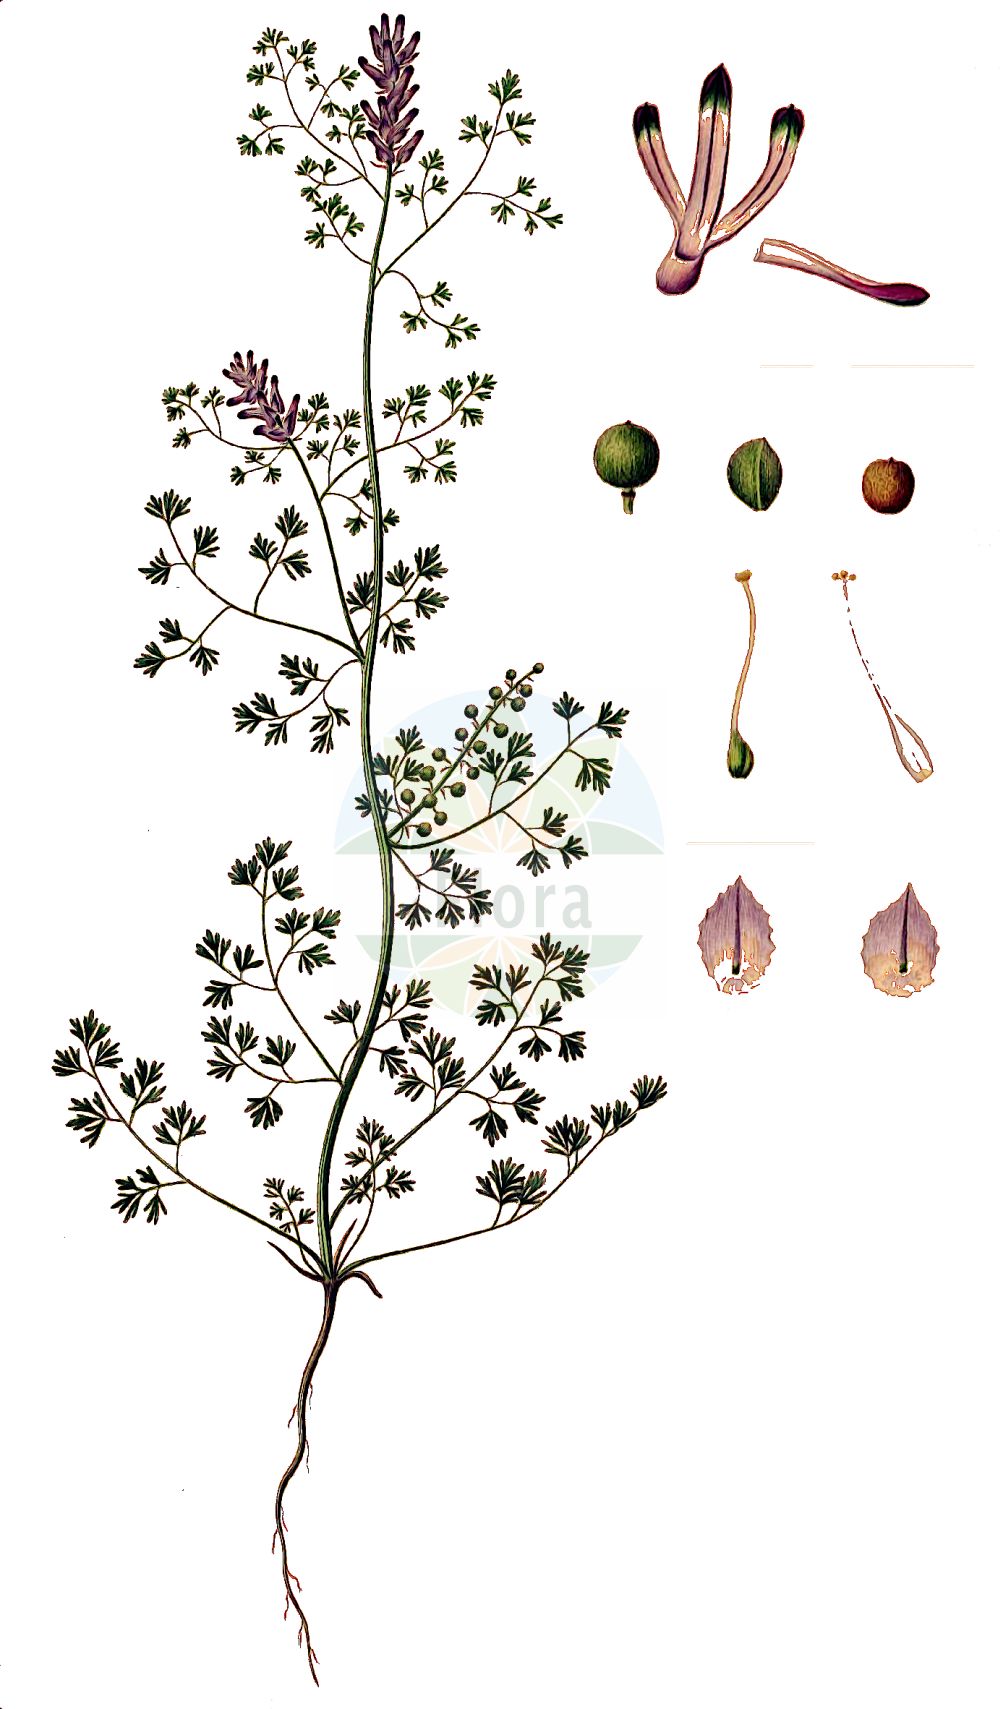 Historische Abbildung von Fumaria densiflora (Dense-flowered Fumitory). Das Bild zeigt Blatt, Bluete, Frucht und Same. ---- Historical Drawing of Fumaria densiflora (Dense-flowered Fumitory). The image is showing leaf, flower, fruit and seed.(Fumaria densiflora,Dense-flowered Fumitory,Fumaria micrantha,Fumaria obtusisepala,Fumaria densiflora,Fumaria,Erdrauch,Fumitory,Papaveraceae,Mohngewächse,Poppy family,Blatt,Bluete,Frucht,Same,leaf,flower,fruit,seed,Oeder (1761-1883))